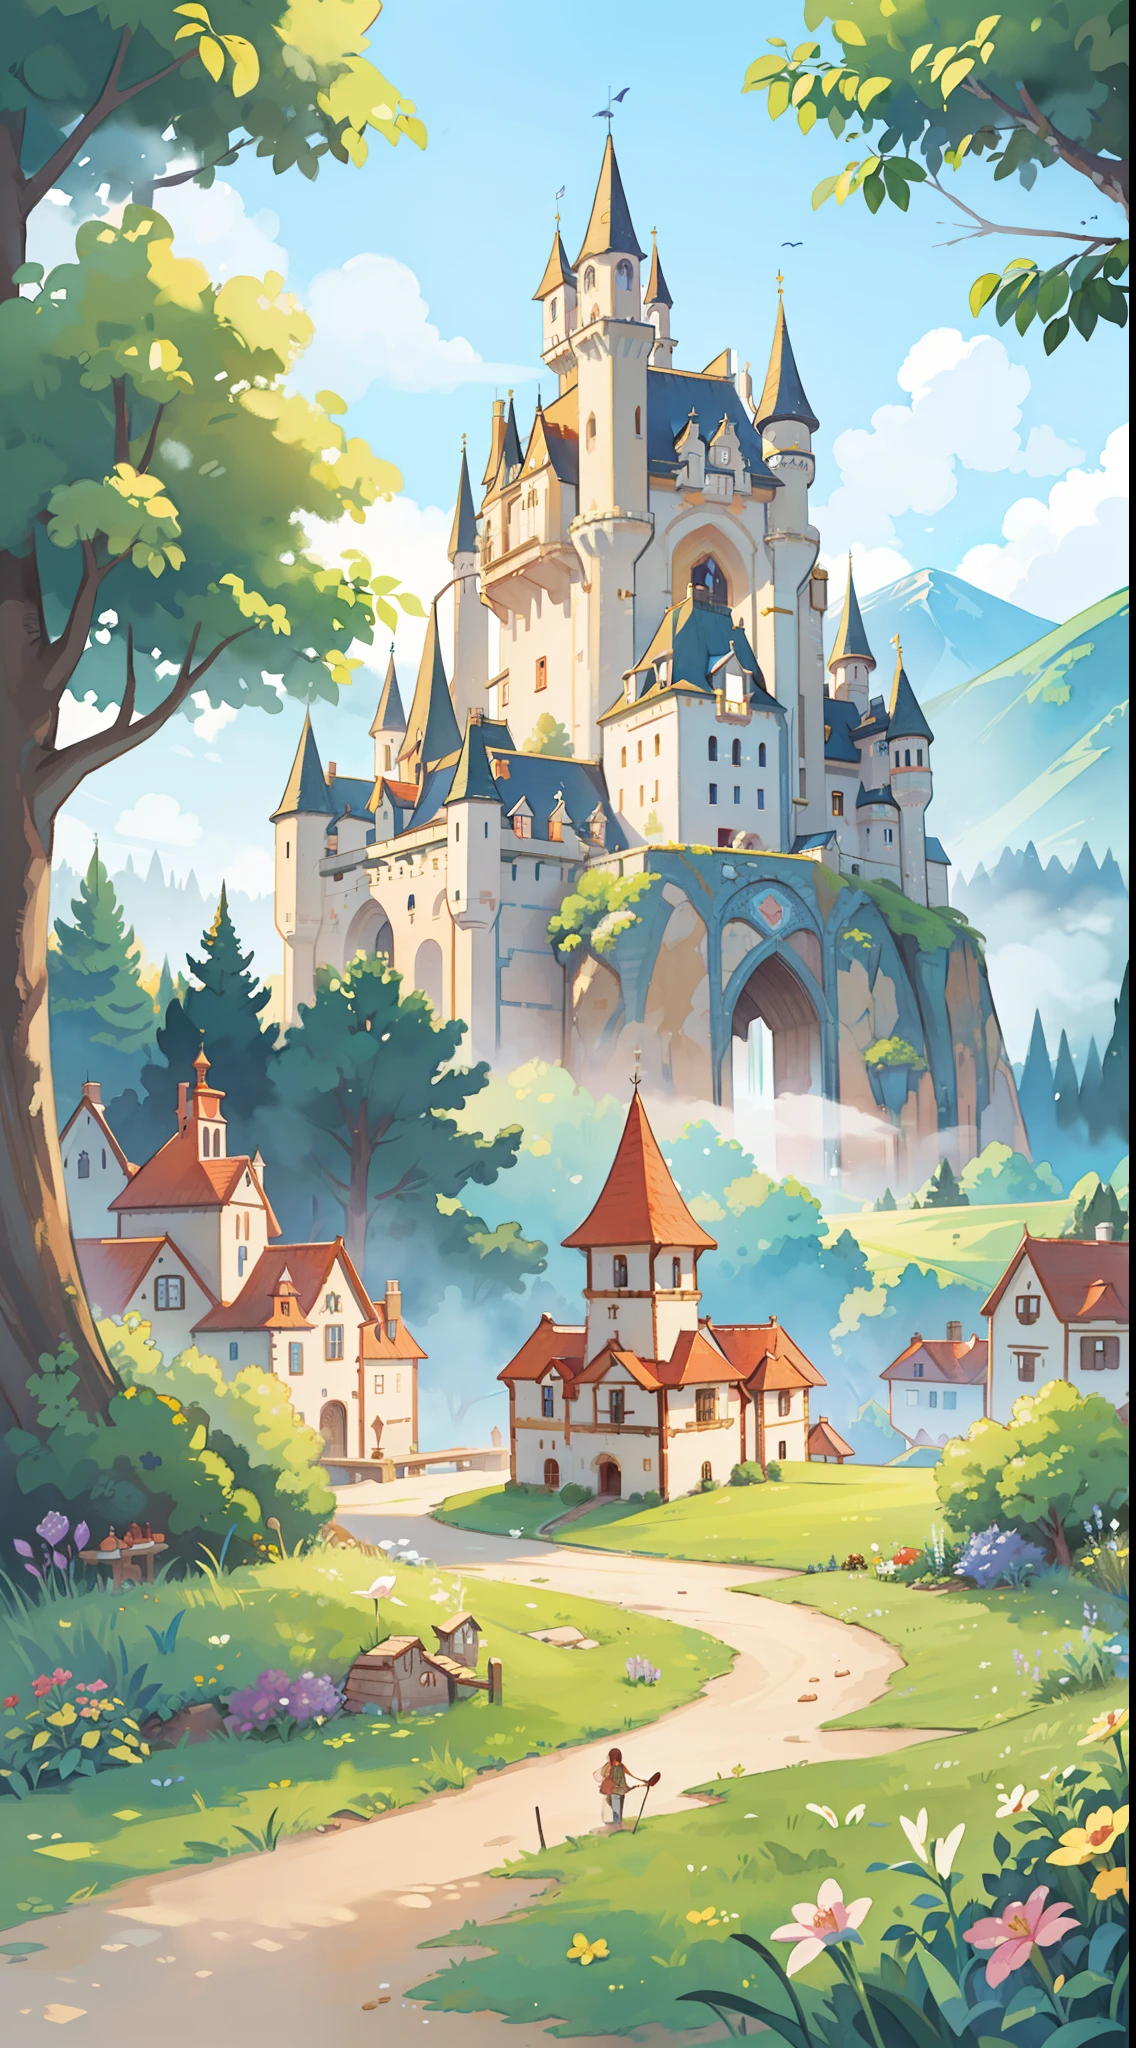 ((كتاب مصور التوضيح)), المناظر الطبيعية الخيالية, الرسم التوضيحي بالألوان المائية, مرح, الألوان الدافئة, القلعة والقرية الخيالية, ((قلعة الأميرة)), منازل على طراز العصور الوسطى الخيالية, ((تحفة)), بيئة مفصلة للغاية